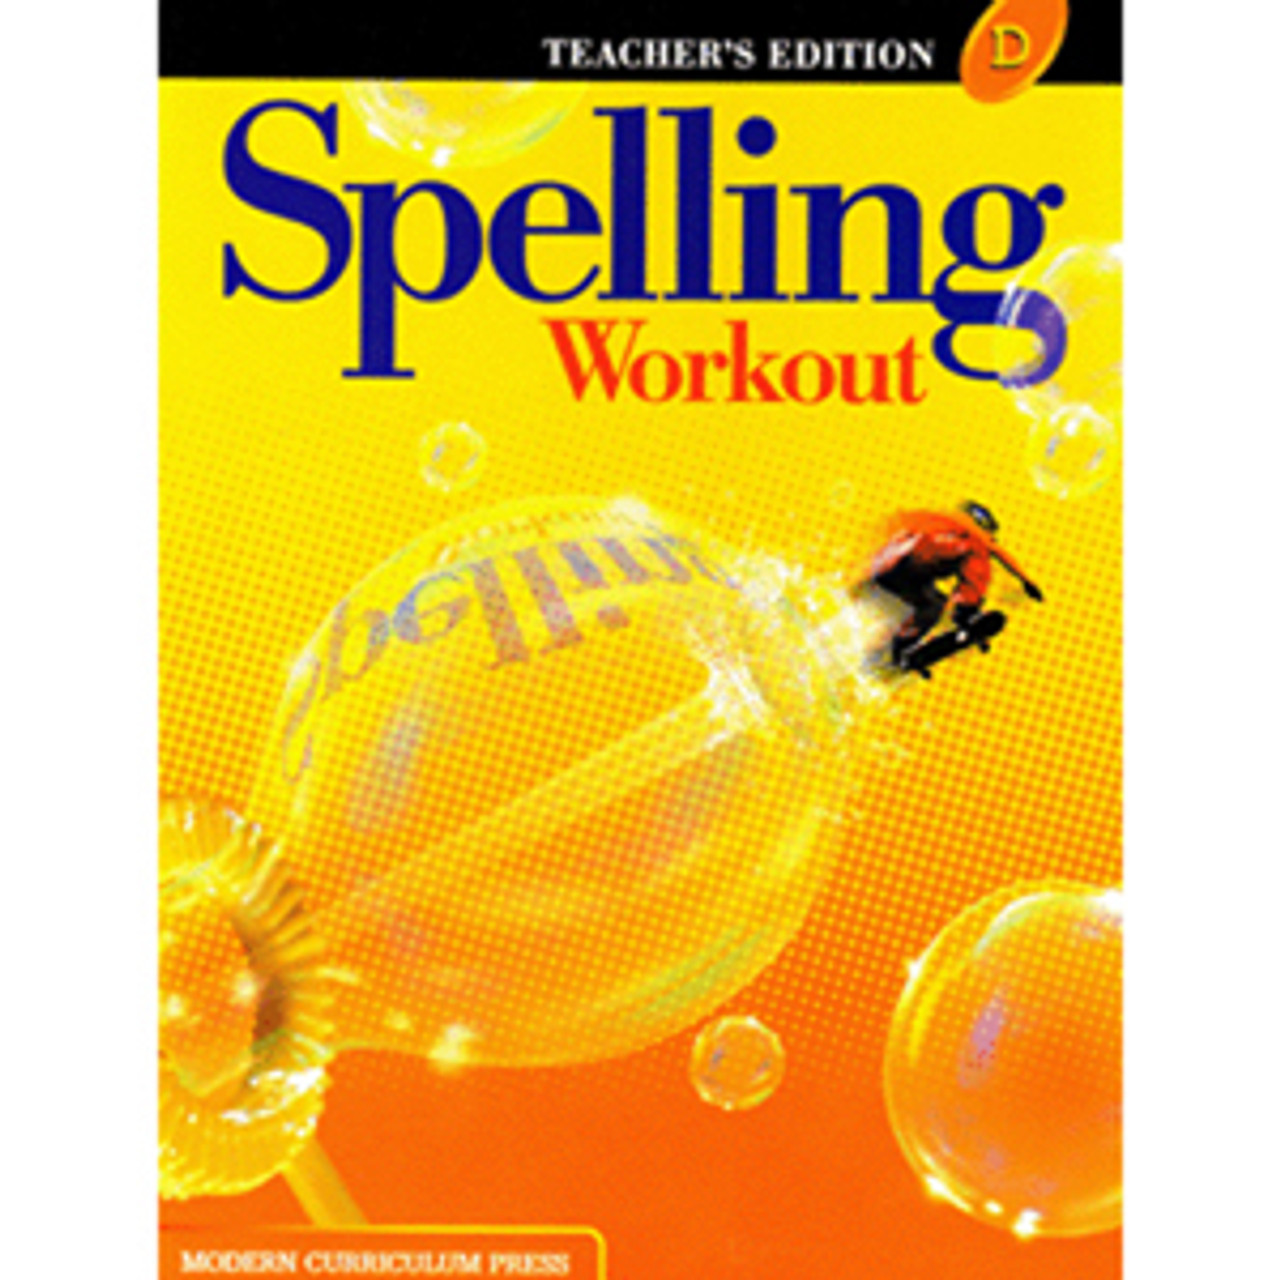 Level　Book　Resource　Workout　Classroom　Teacher　Grade　D　Spelling　Center